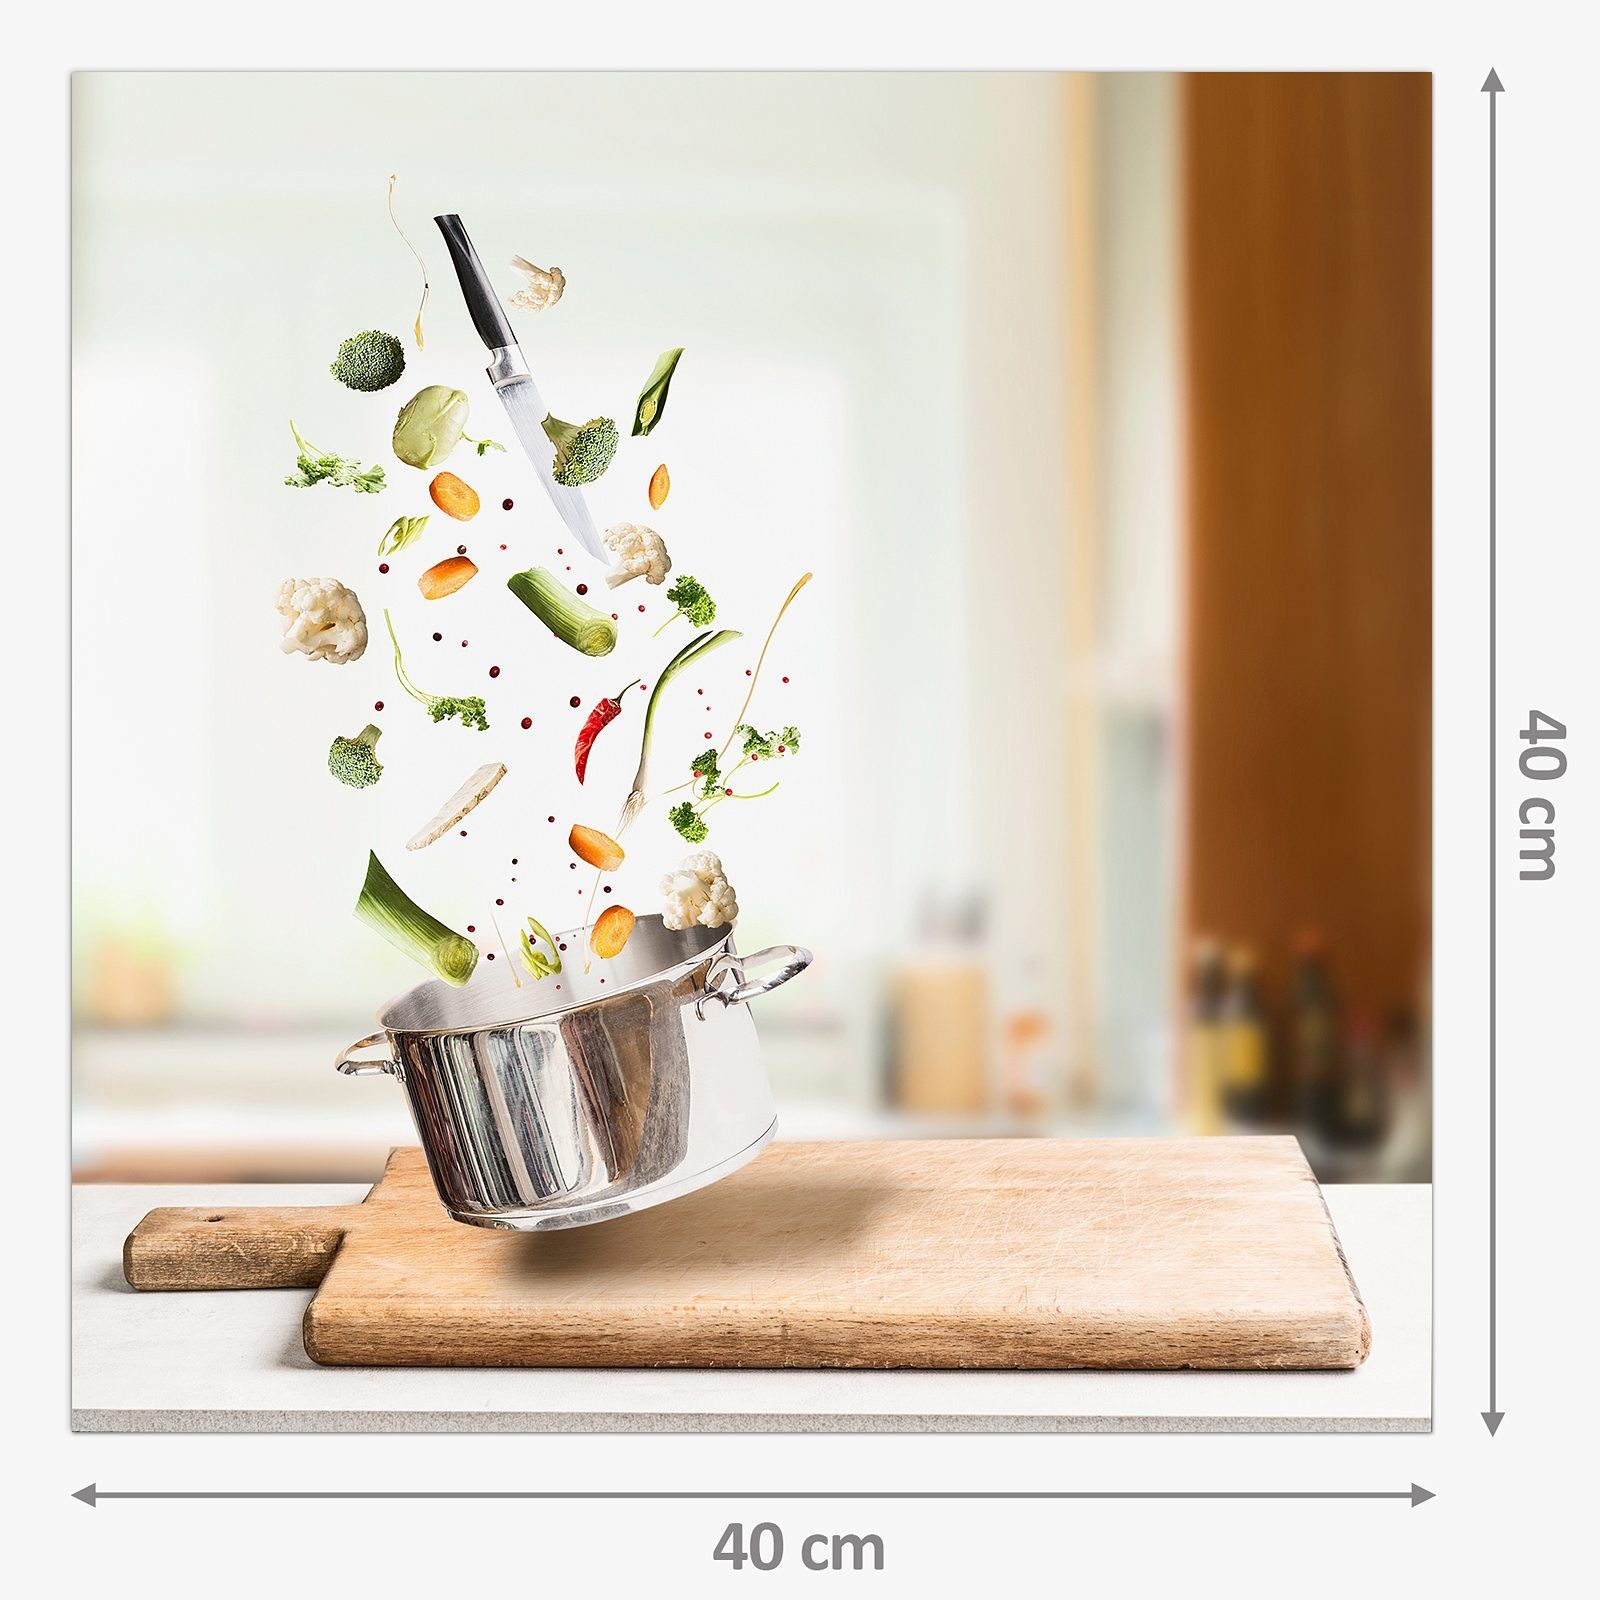 Küchenrückwand mit Primedeco Motiv Gemüse fallend in Spritzschutz Topf Glas Küchenrückwand